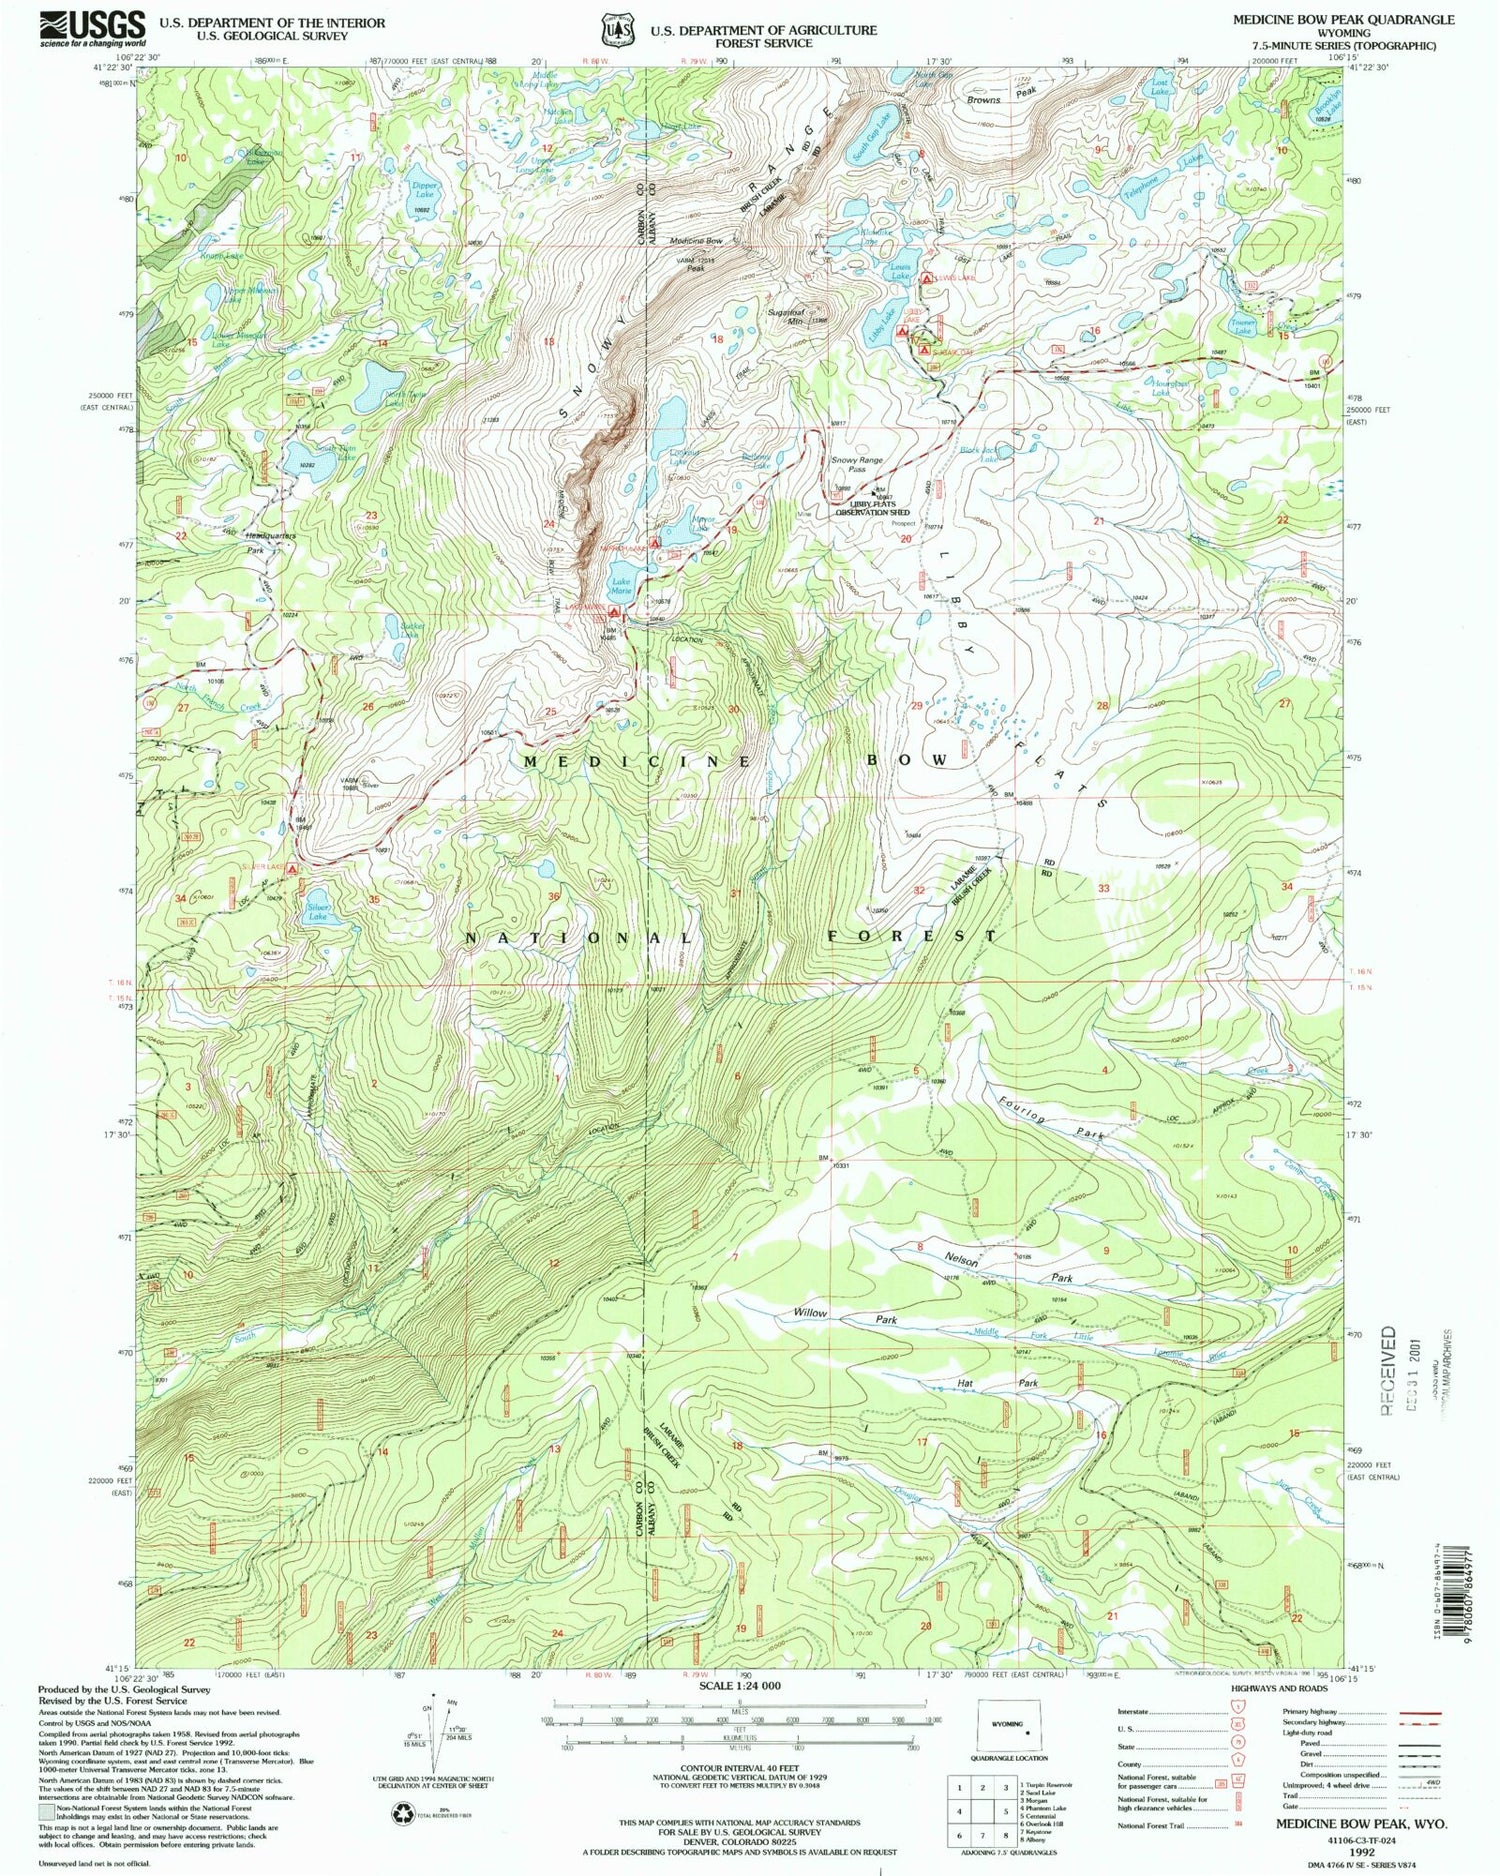 USGS Classic Medicine Bow Peak Wyoming 7.5'x7.5' Topo Map Image